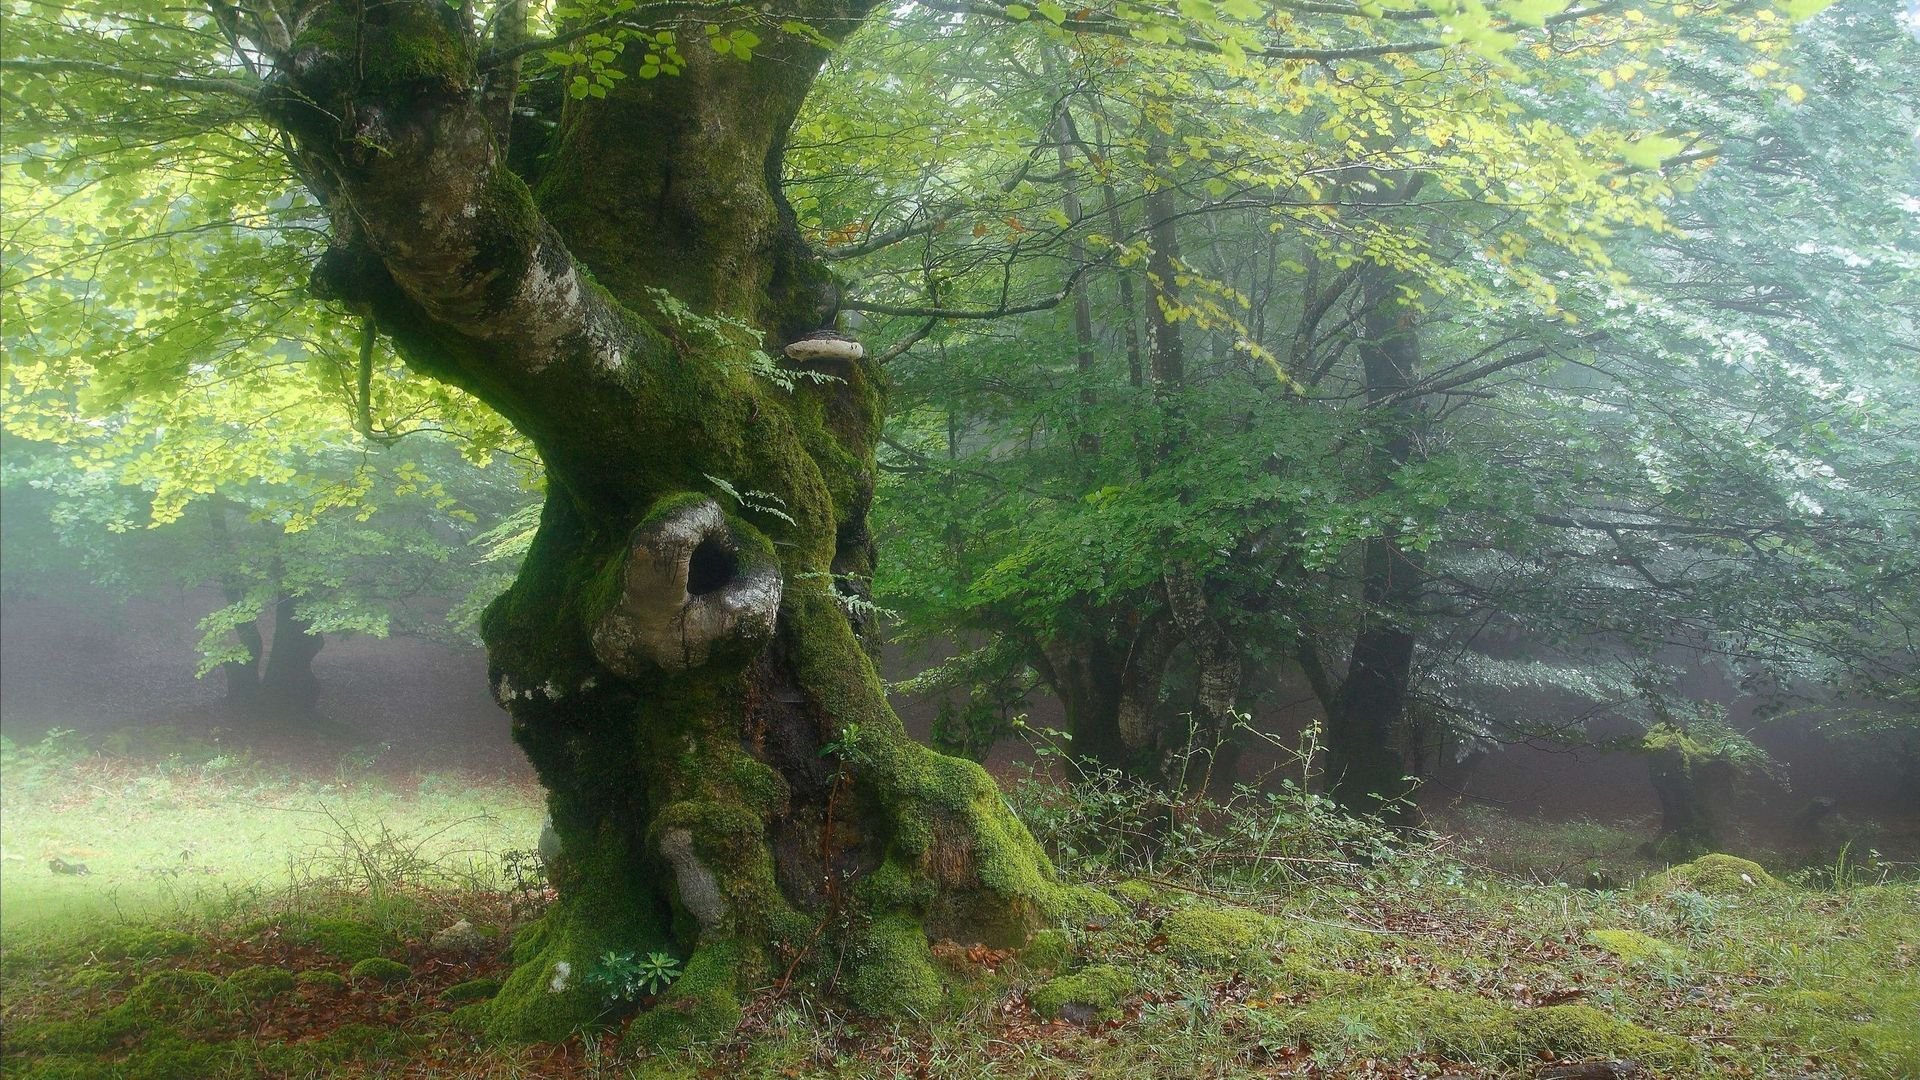 Густо растущие деревья. Шервудский лес в Англии. Лесная опушка дремучего леса. Bosco delle Querce (дубовый лес). Беловежская пуща деревья.